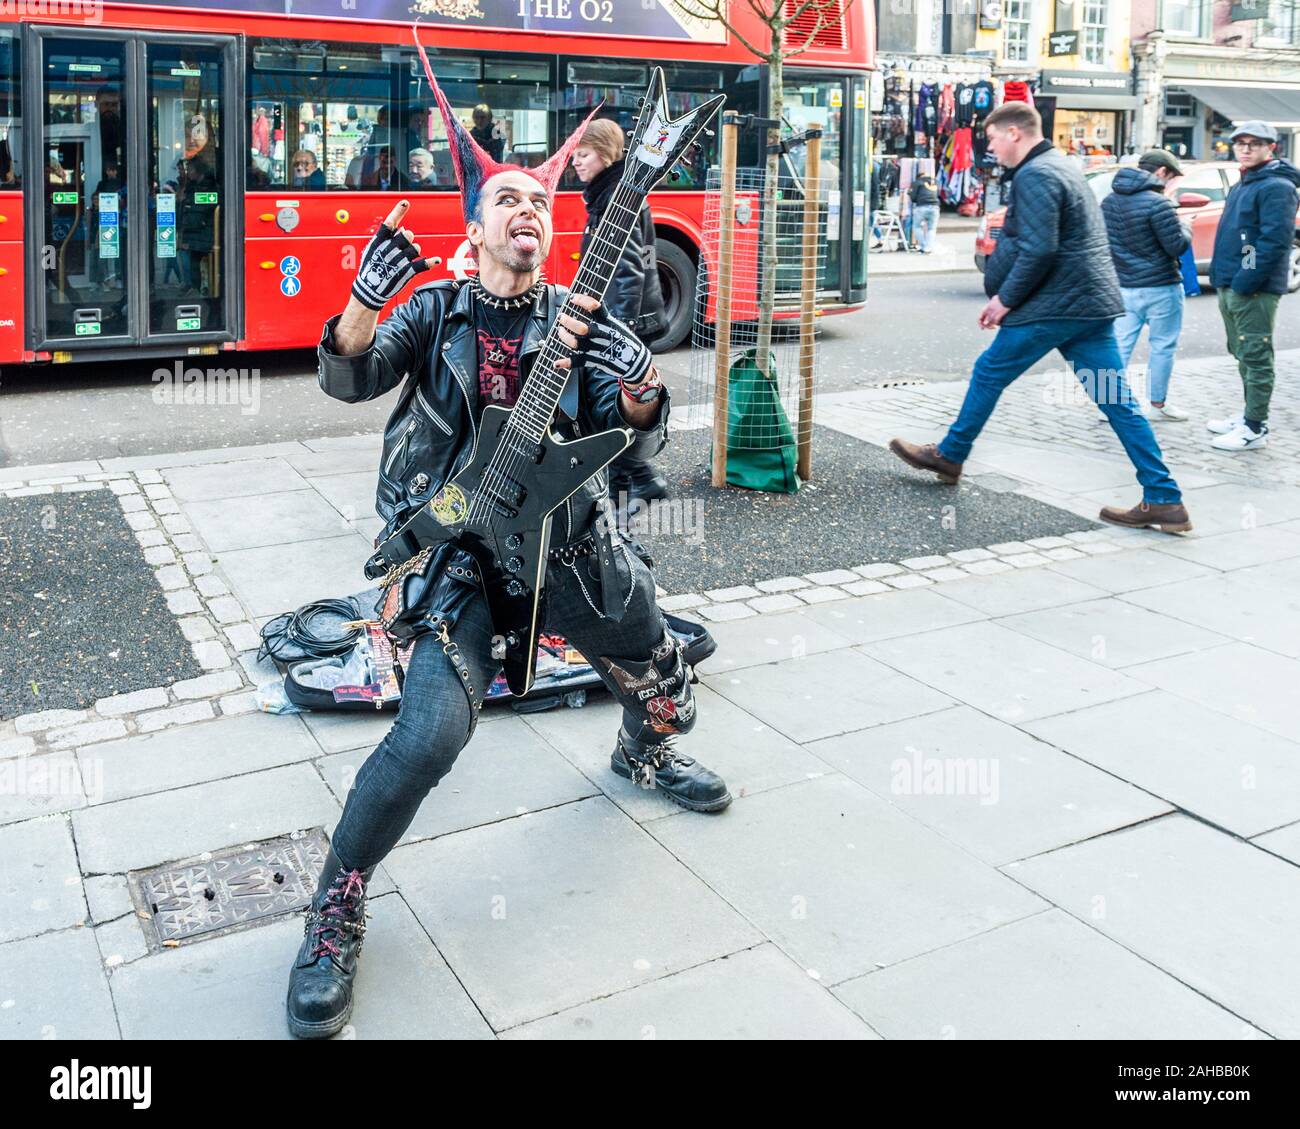 Mann in Punk-Rocker-Kleidung mit Stachelhaar und einer Gitarrenpose für Touristenbilder an der Camden High Street, Camden, London, Großbritannien. Stockfoto